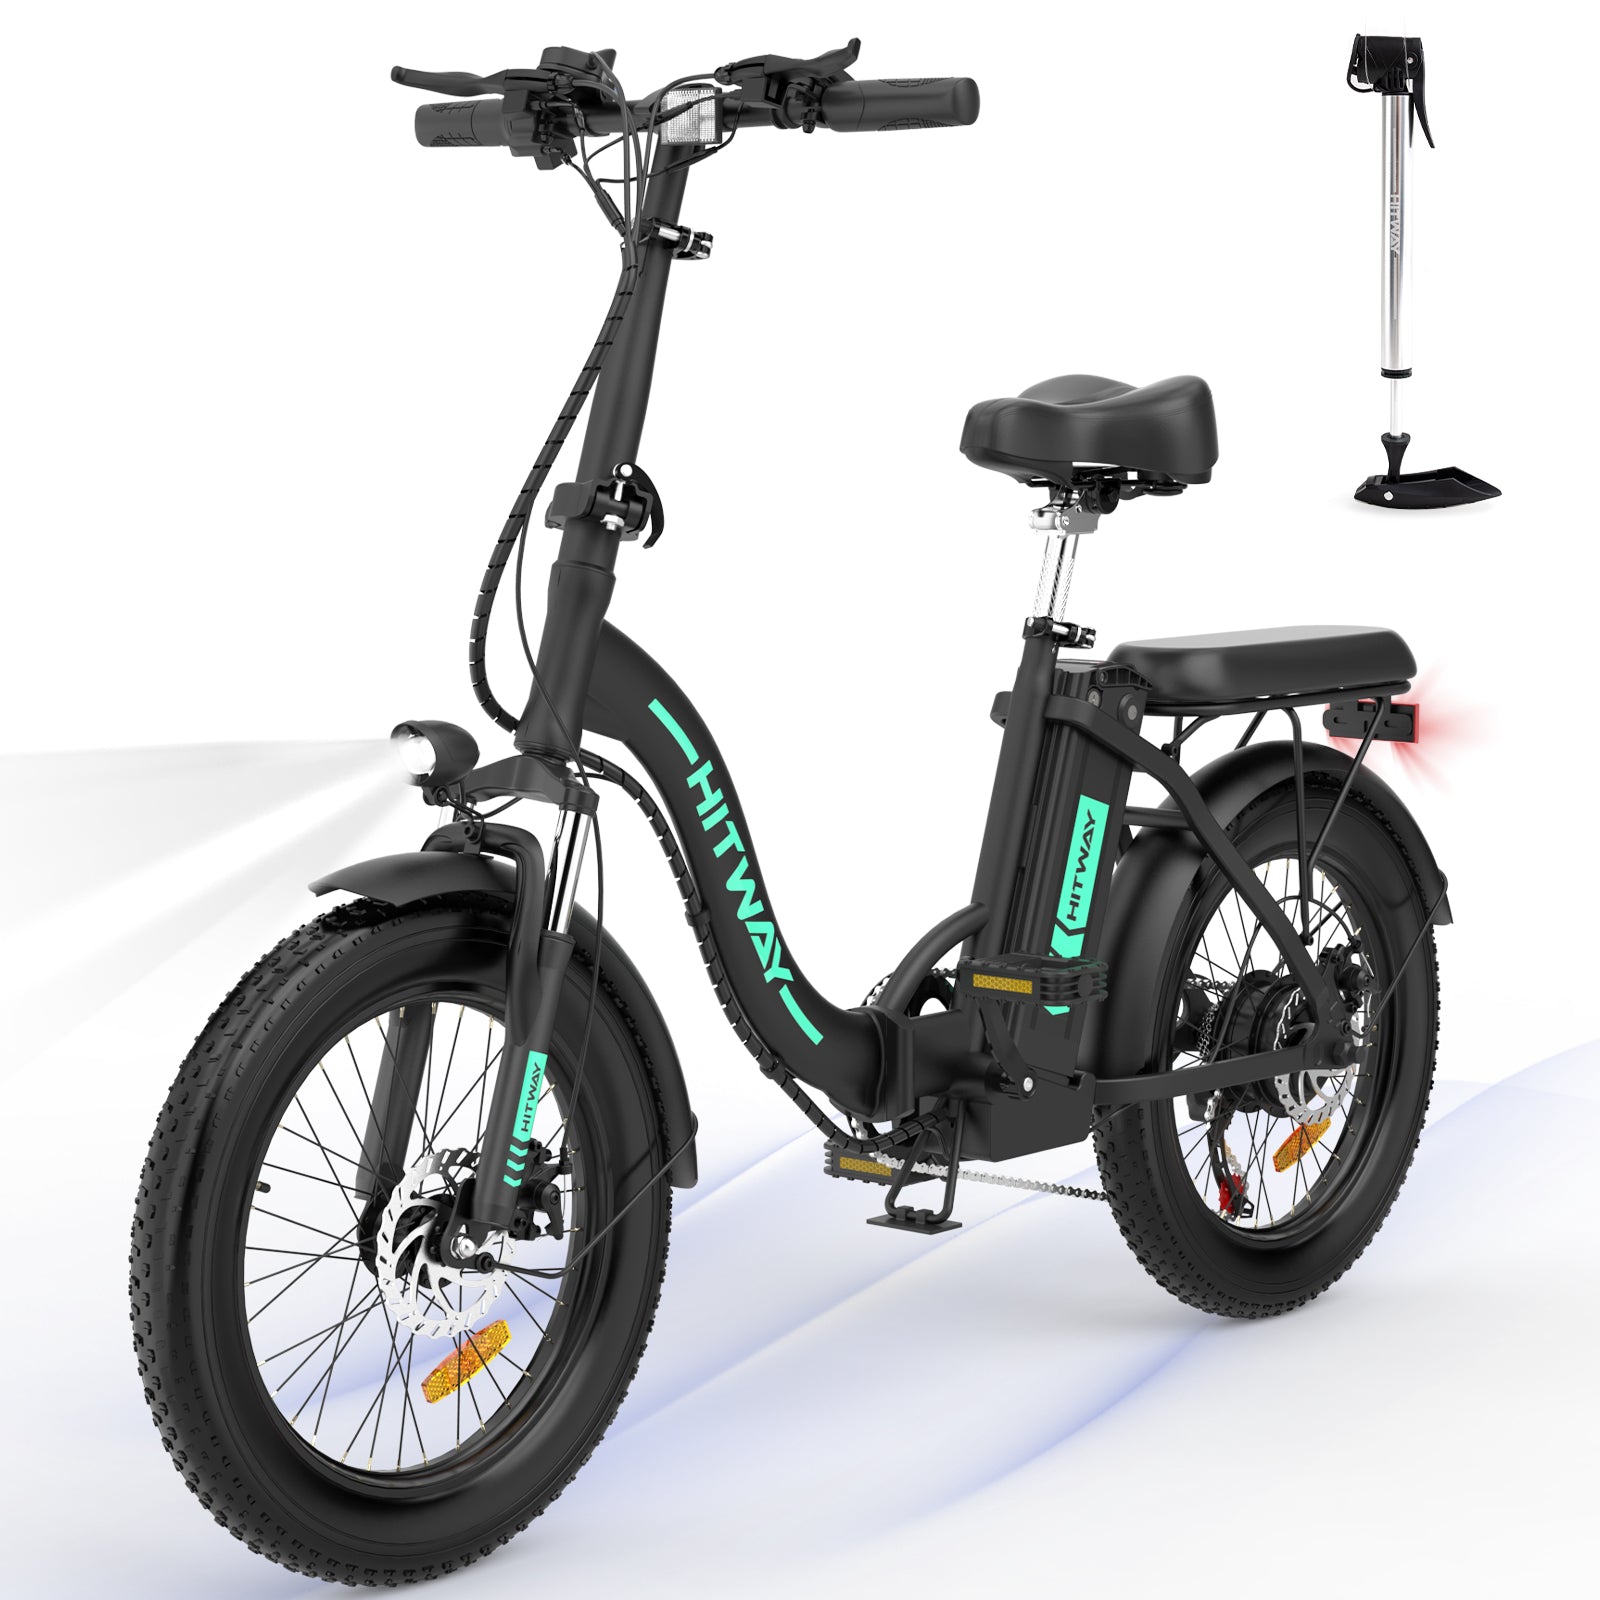 Bicicleta eléctrica de 750 W para adultos, bicicletas eléctricas plegables  de 20 x 4.0 pulgadas con batería extraíble de 48 V y 18 Ah, amortiguador